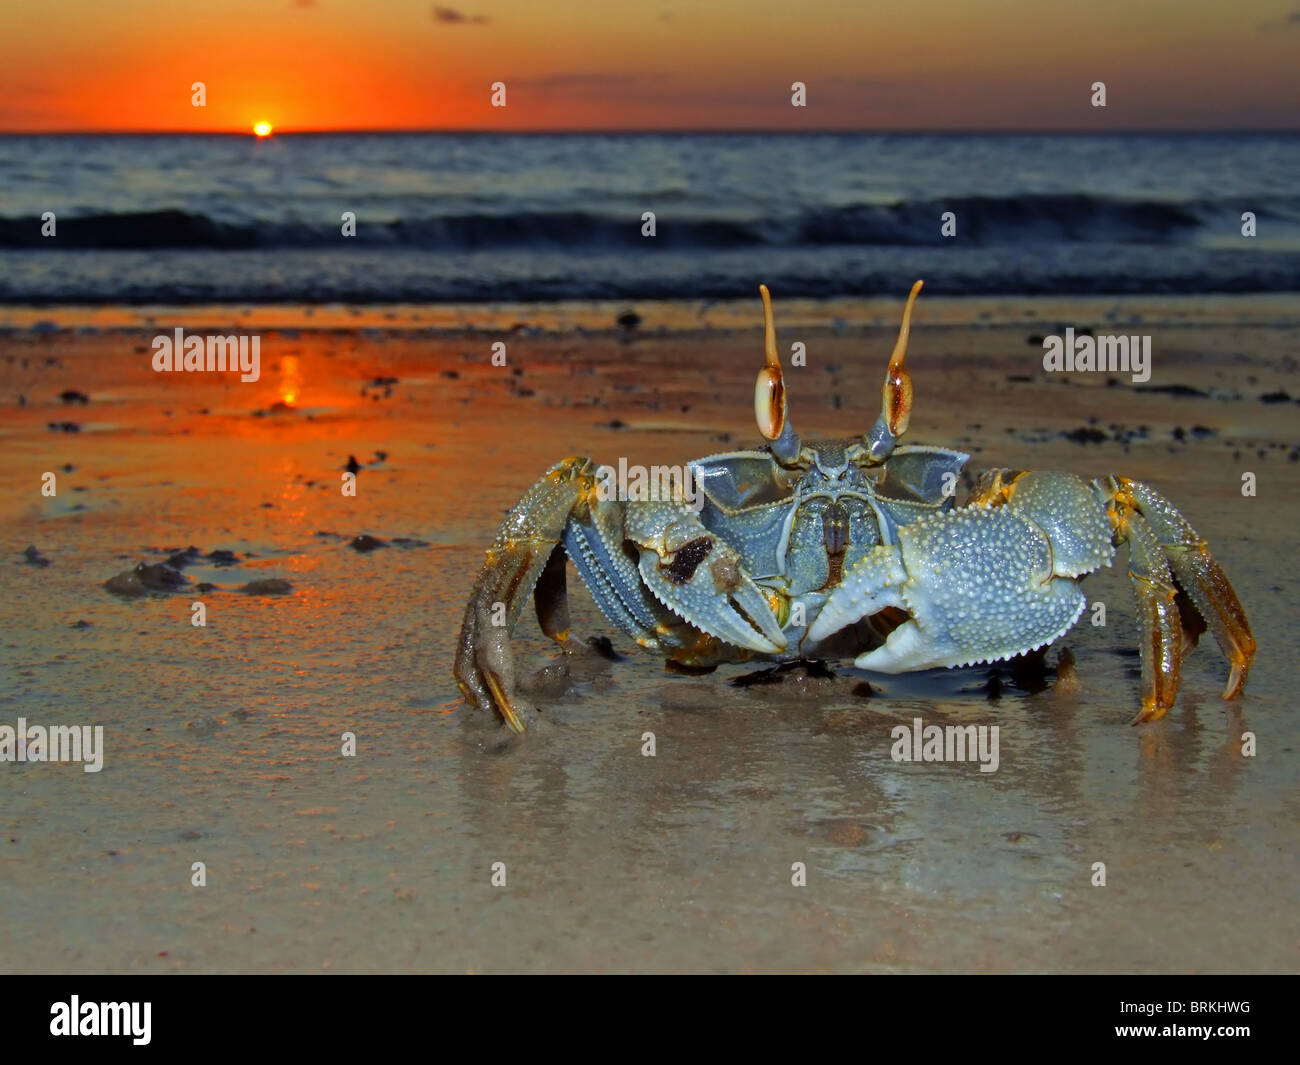 Le crabe fantôme (Ocypode sp.) sur la plage au coucher du soleil, le Mozambique, l'Afrique du Sud Banque D'Images